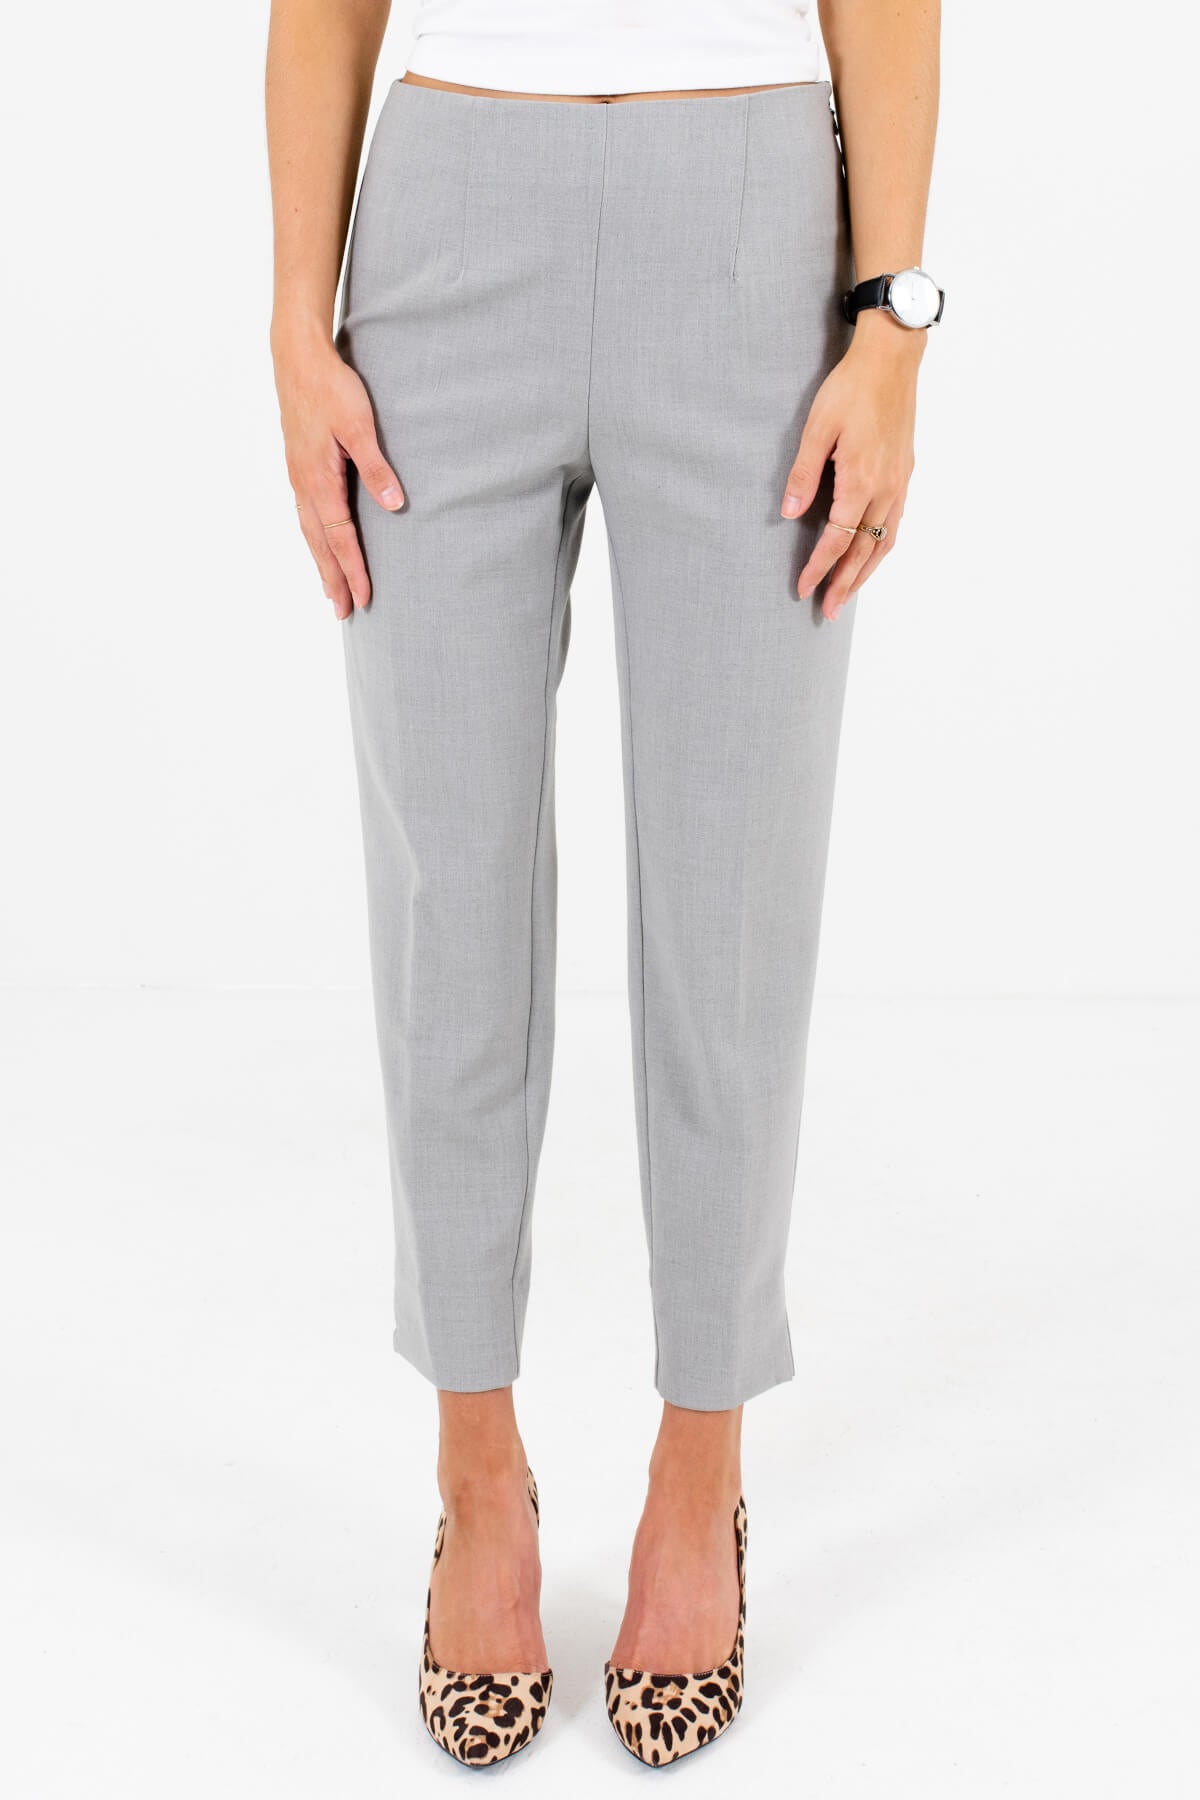 Buy Women Grey Textured Business Casual Regular Fit Trousers Online -  478779 | Van Heusen